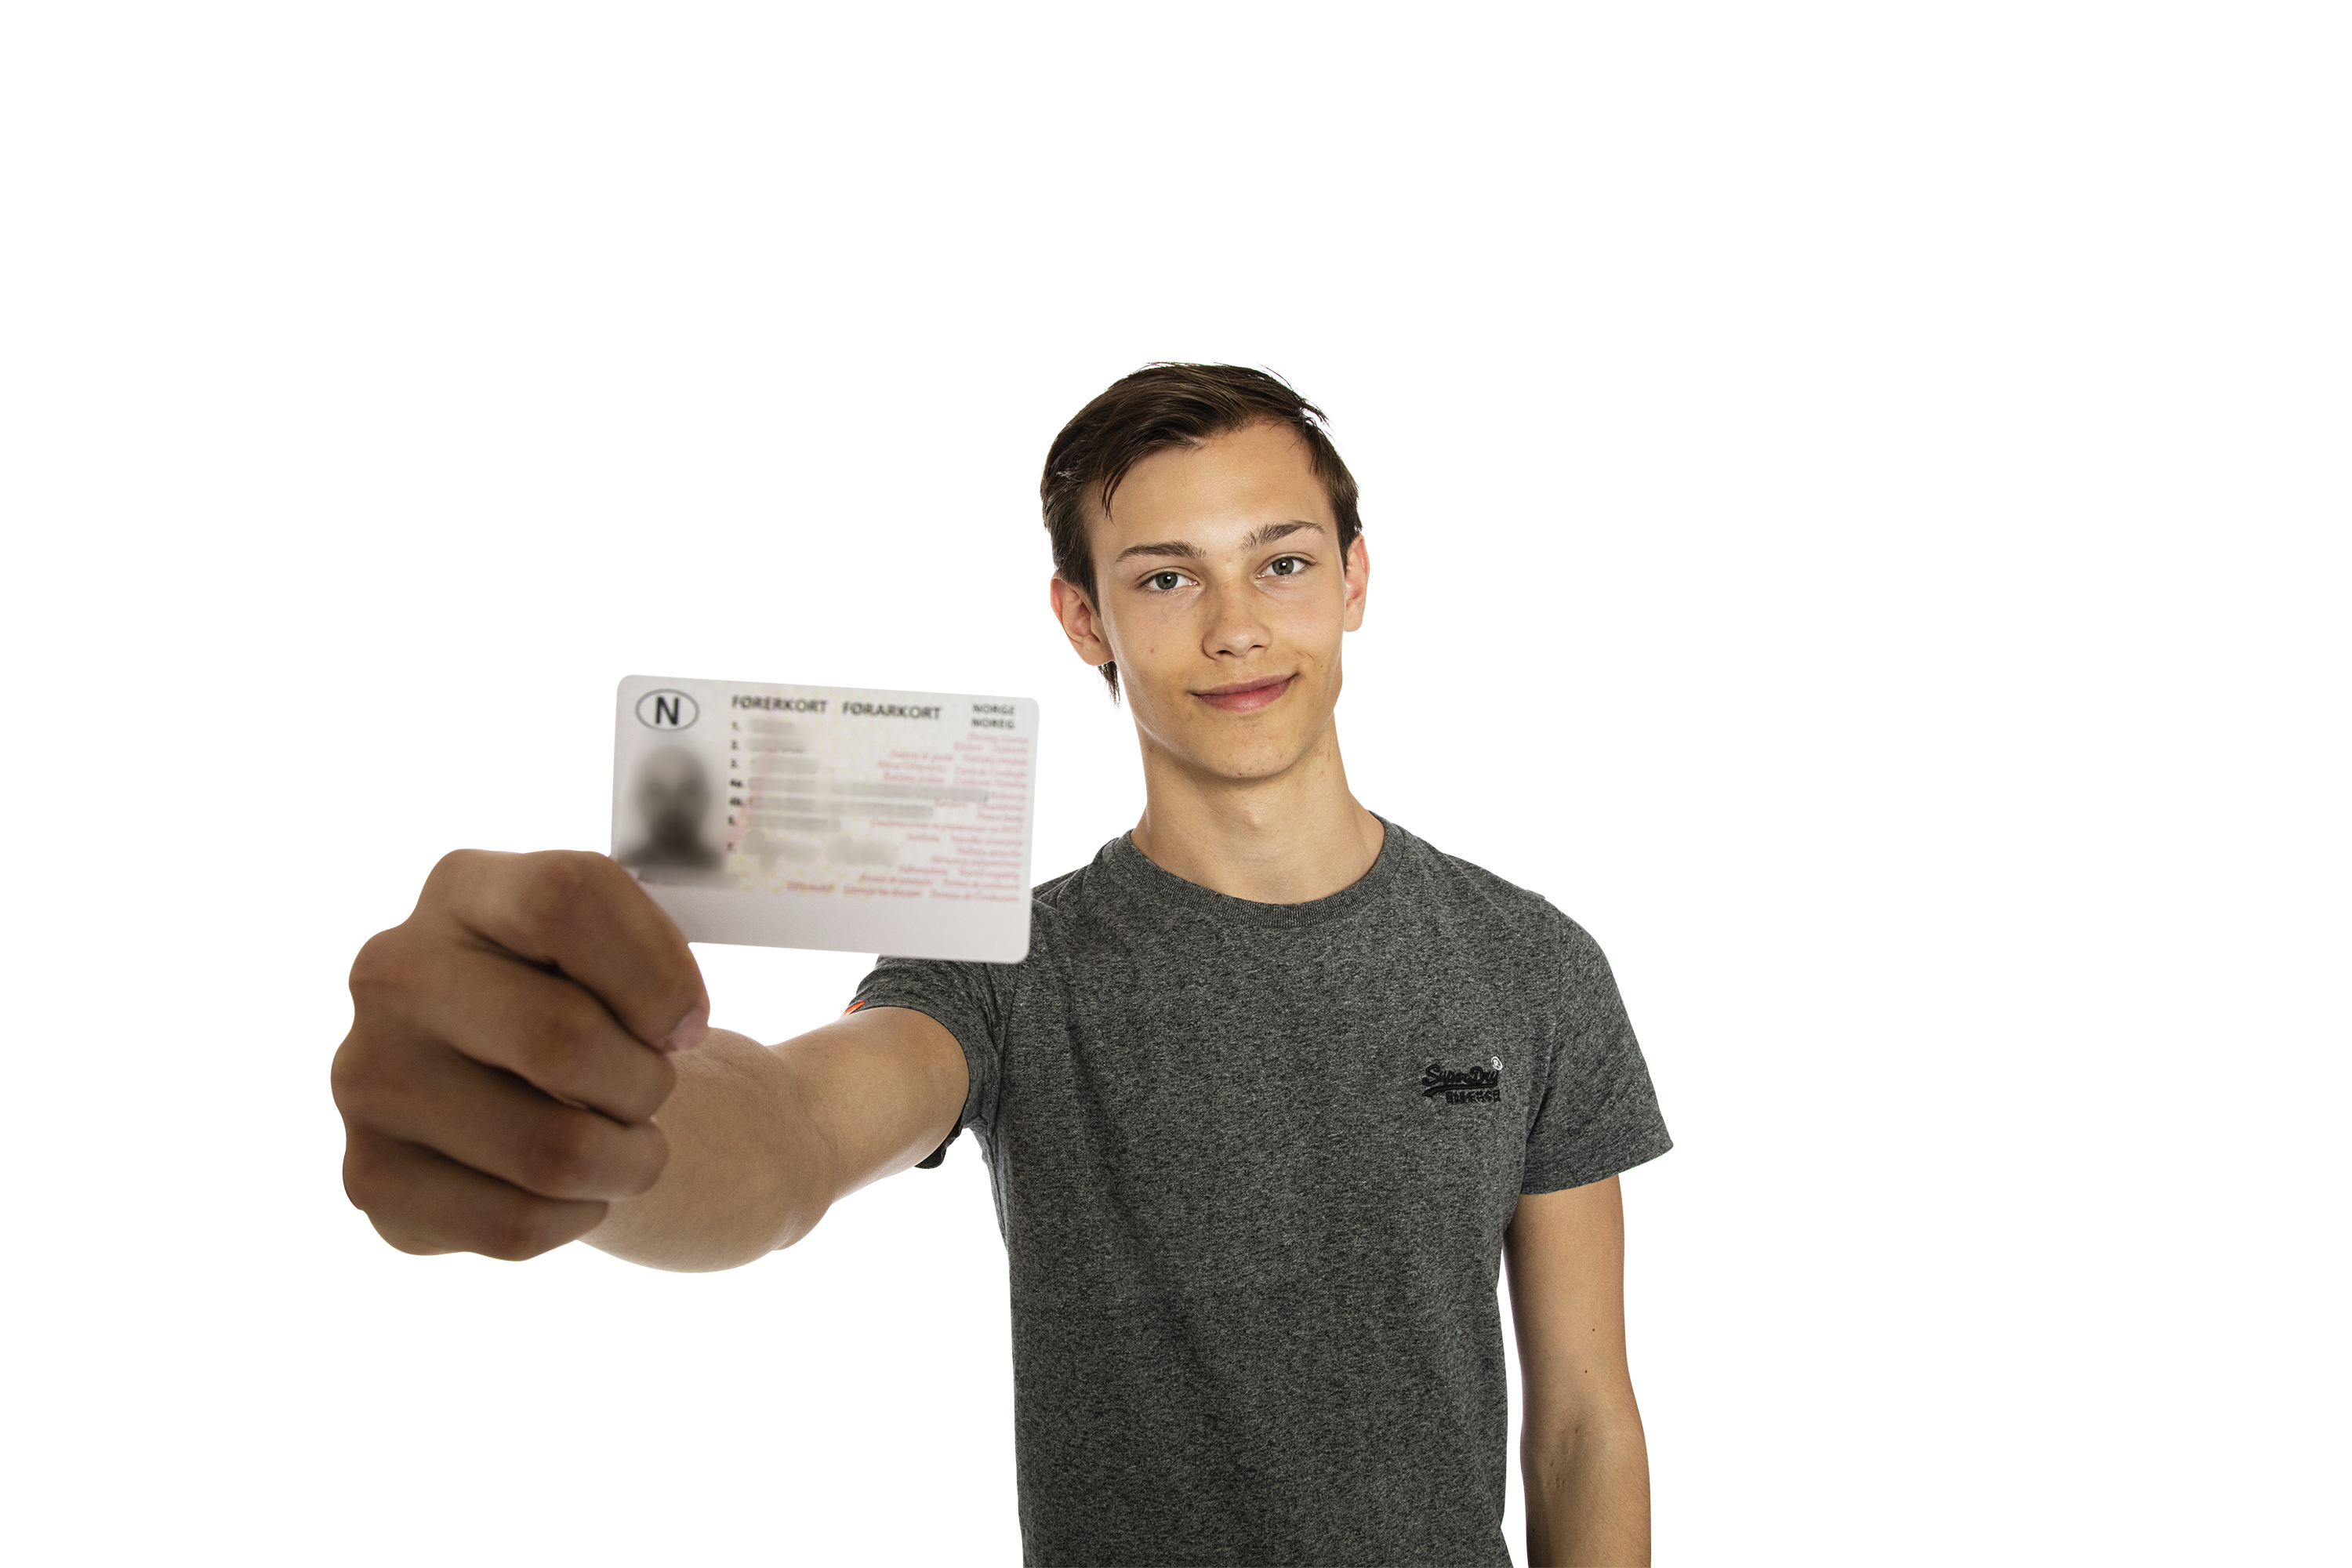 Fornøyd gutt viser frem førerkortet sitt. Tekst og tall på førerkortet er ikke lesbart og har blitt anonymisert.